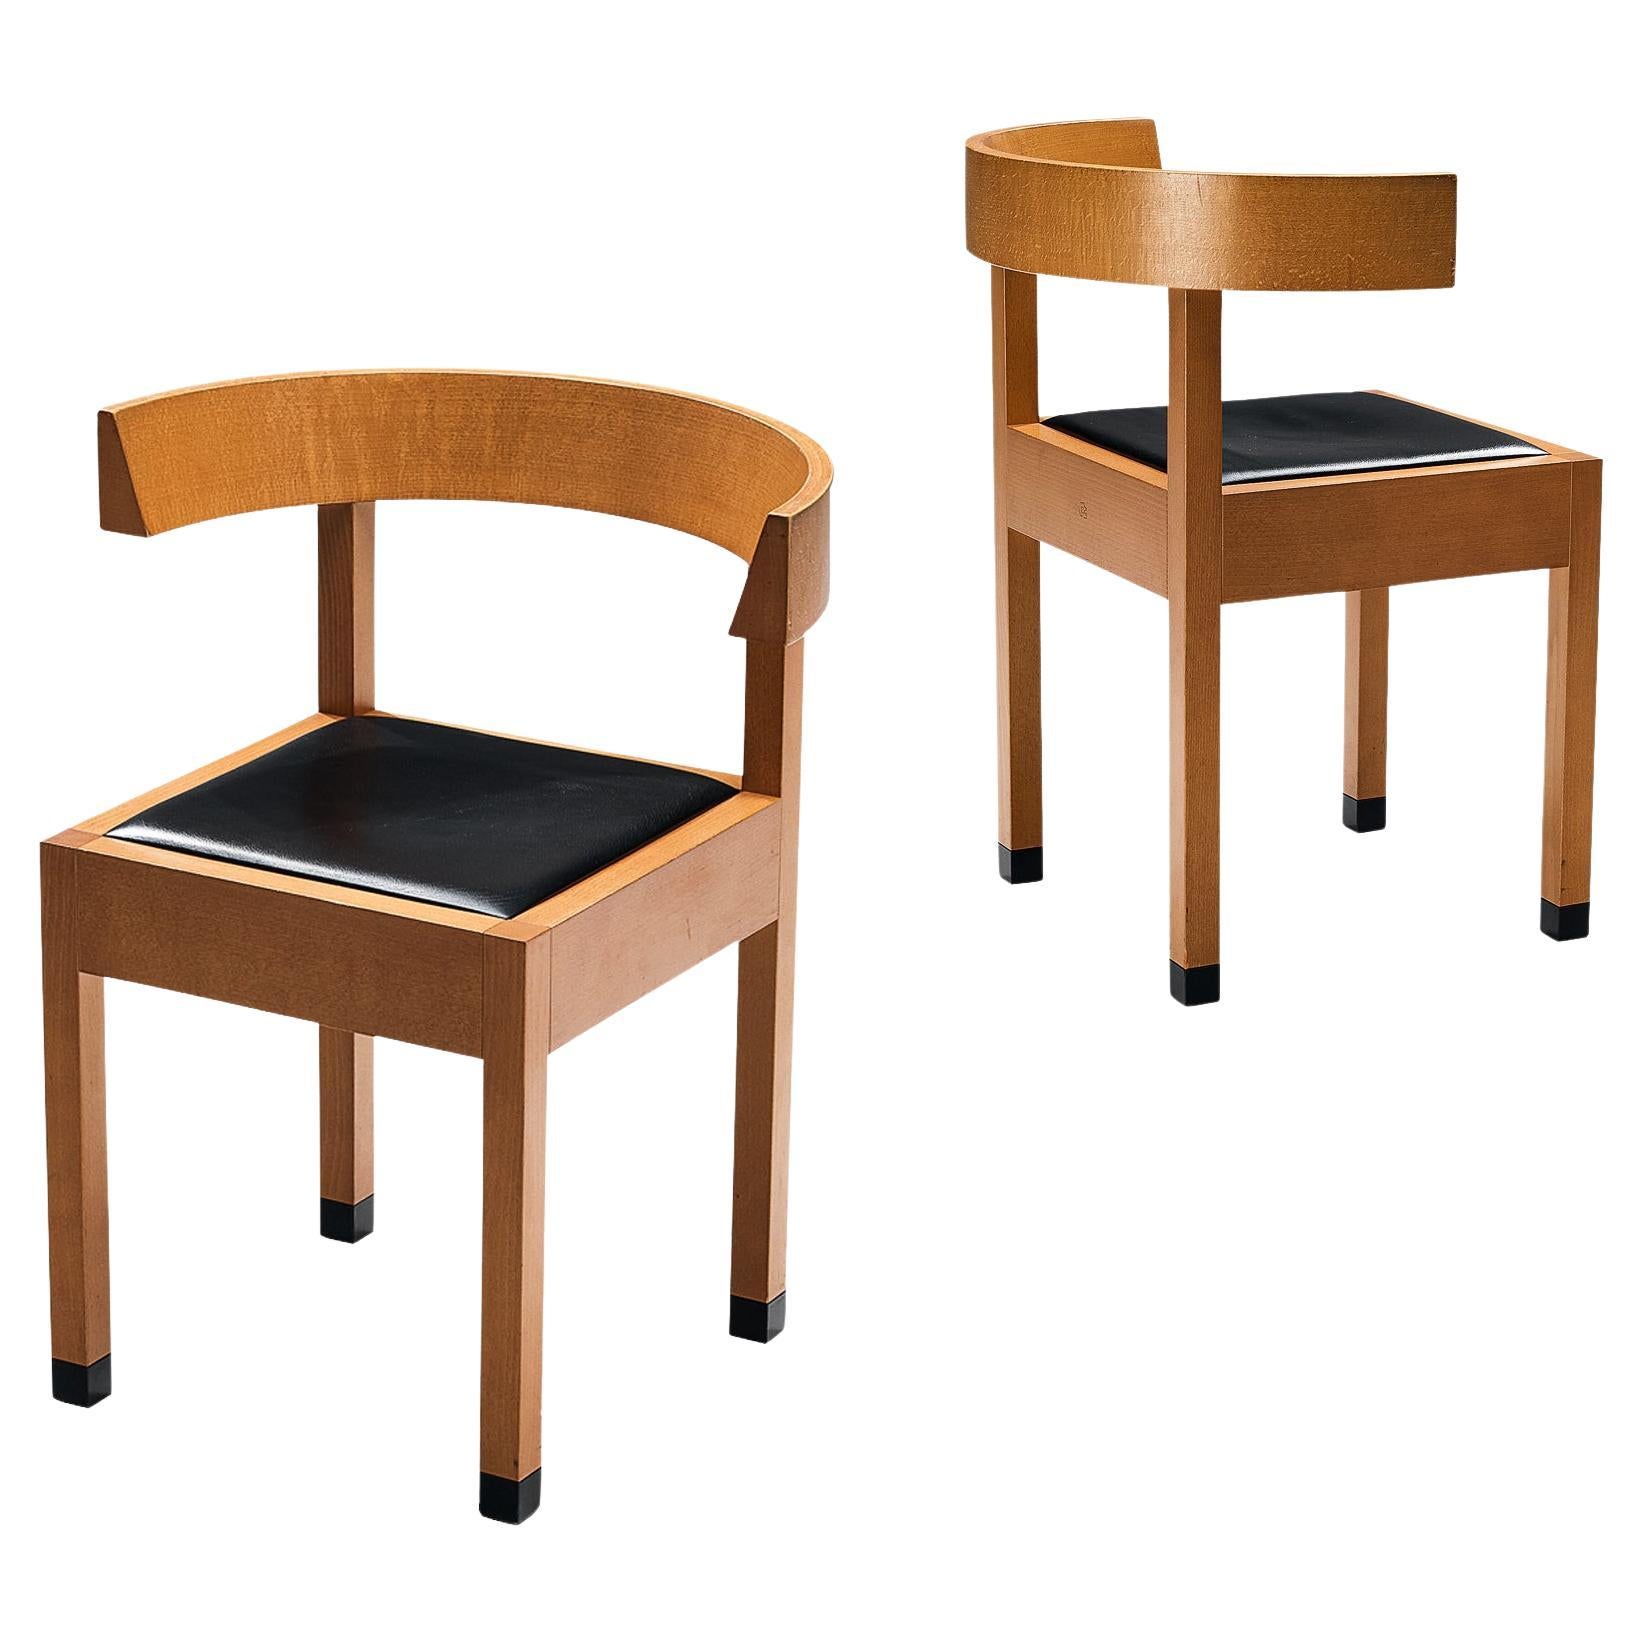 Oswald Mathias Ungers pour Draenert paire de chaises de salle à manger "Leonardo"